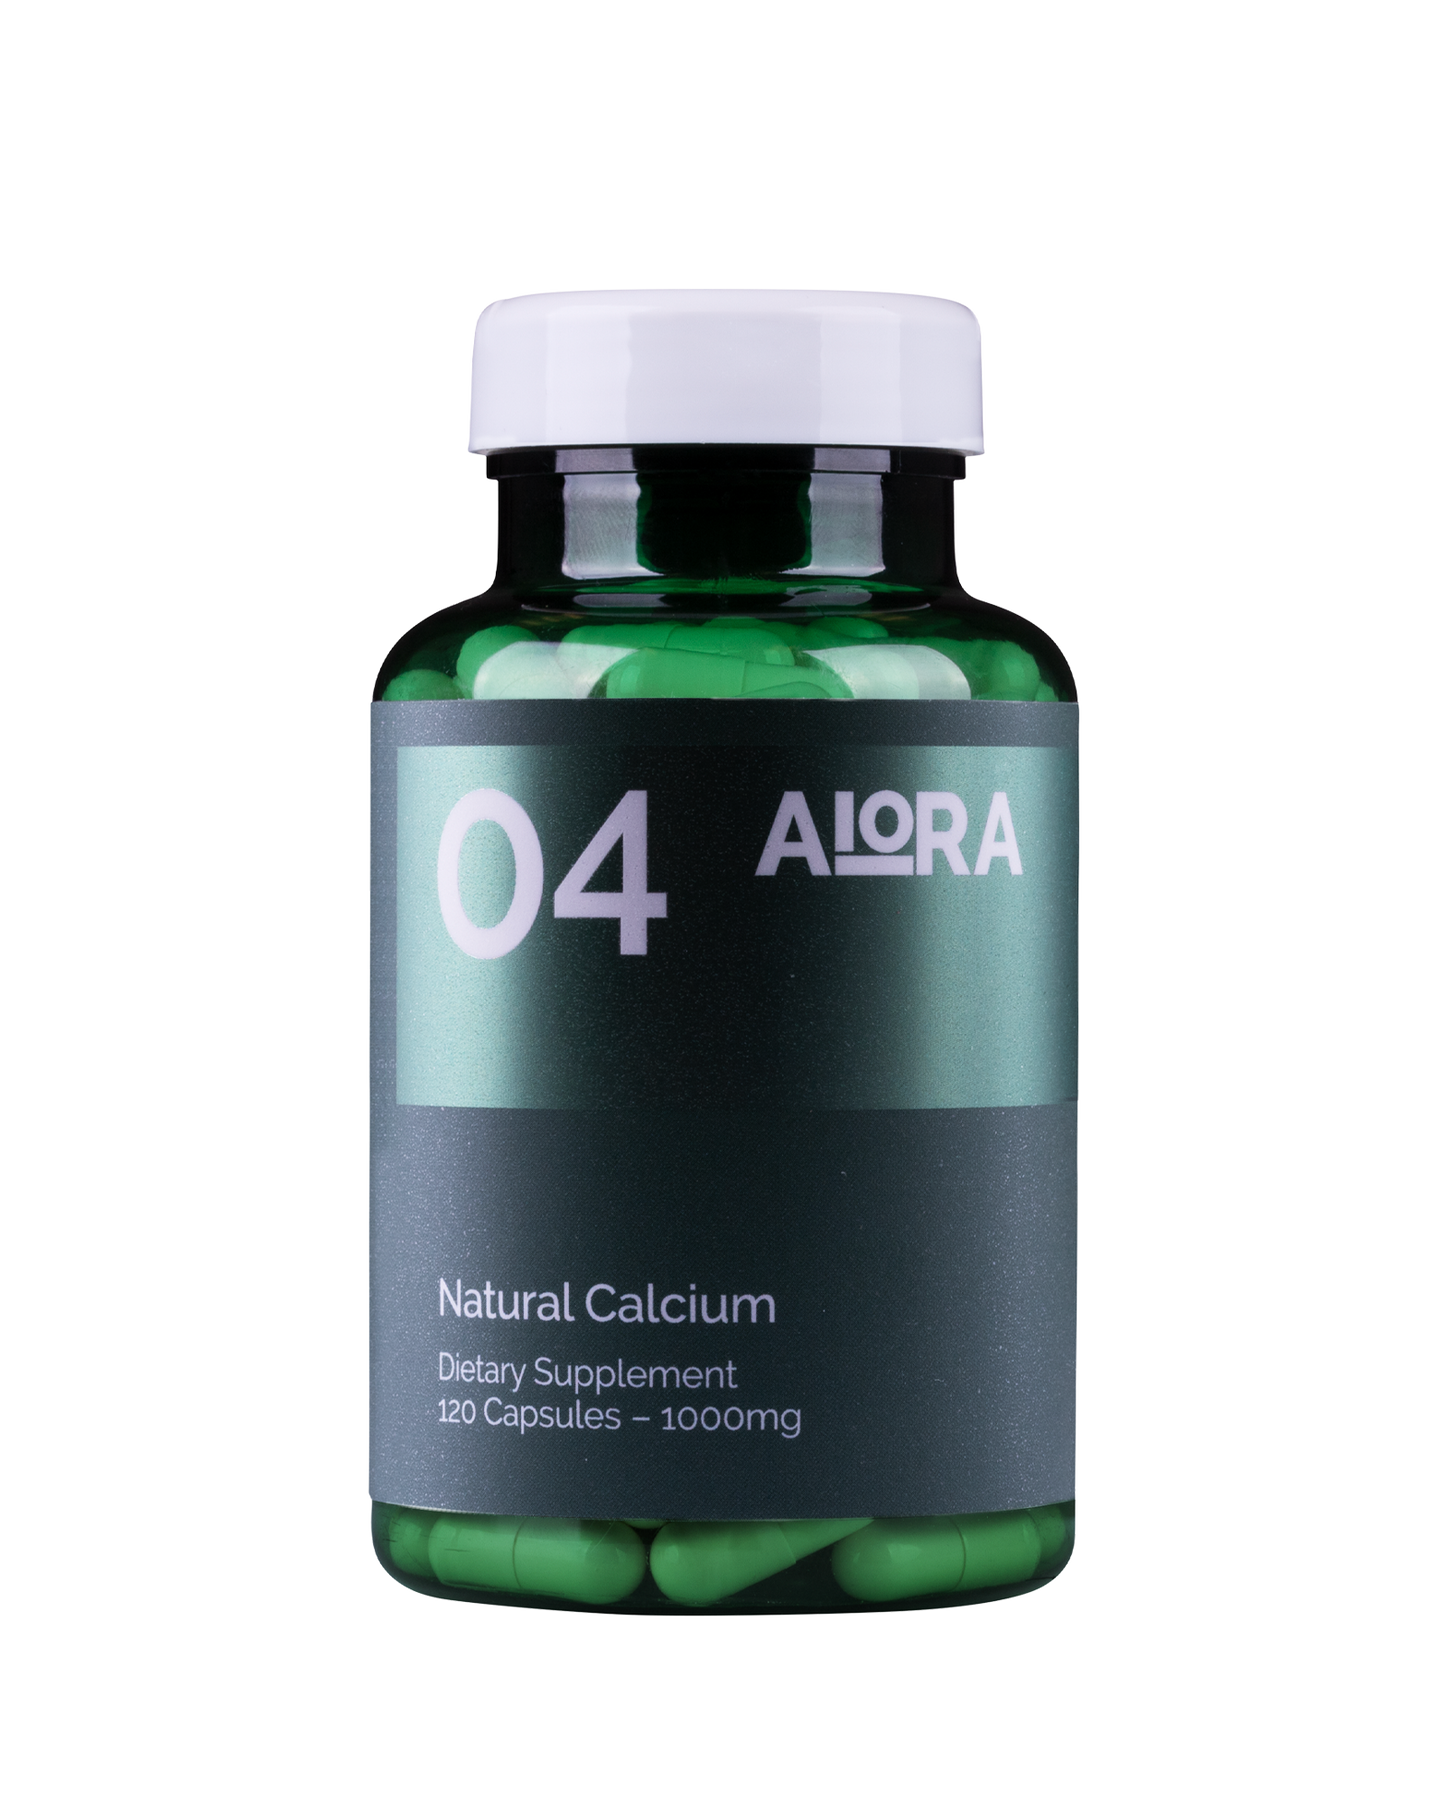 04 Natural Calcium